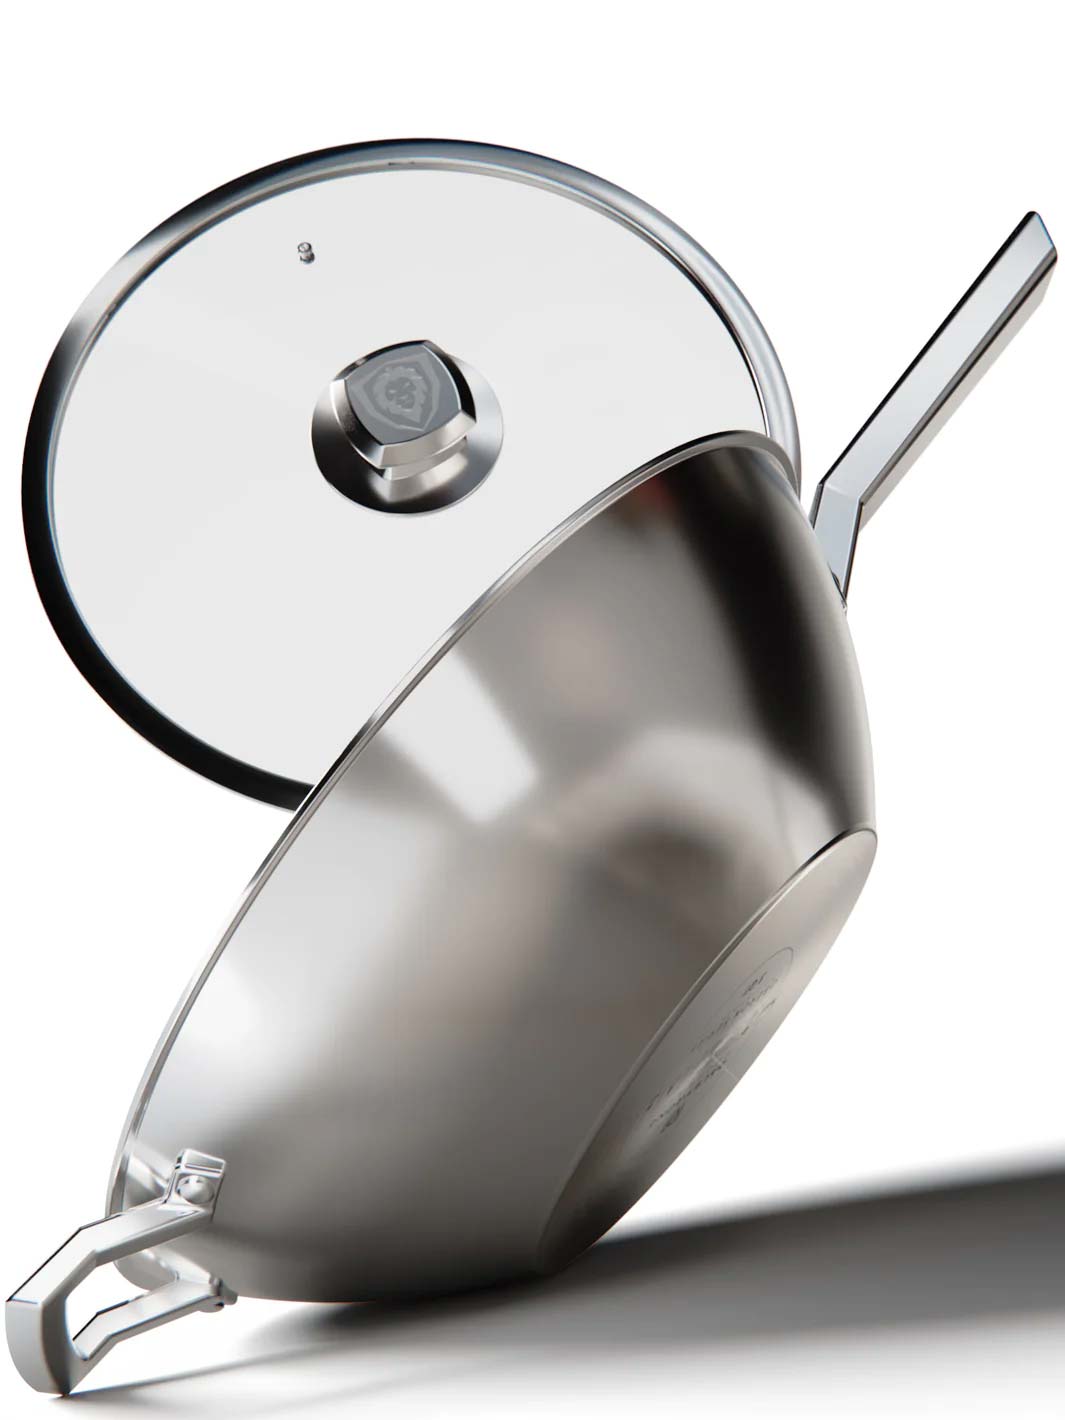 12 Aluminum Frying Pan & Skillet | The Oberon Series | Dalstrong